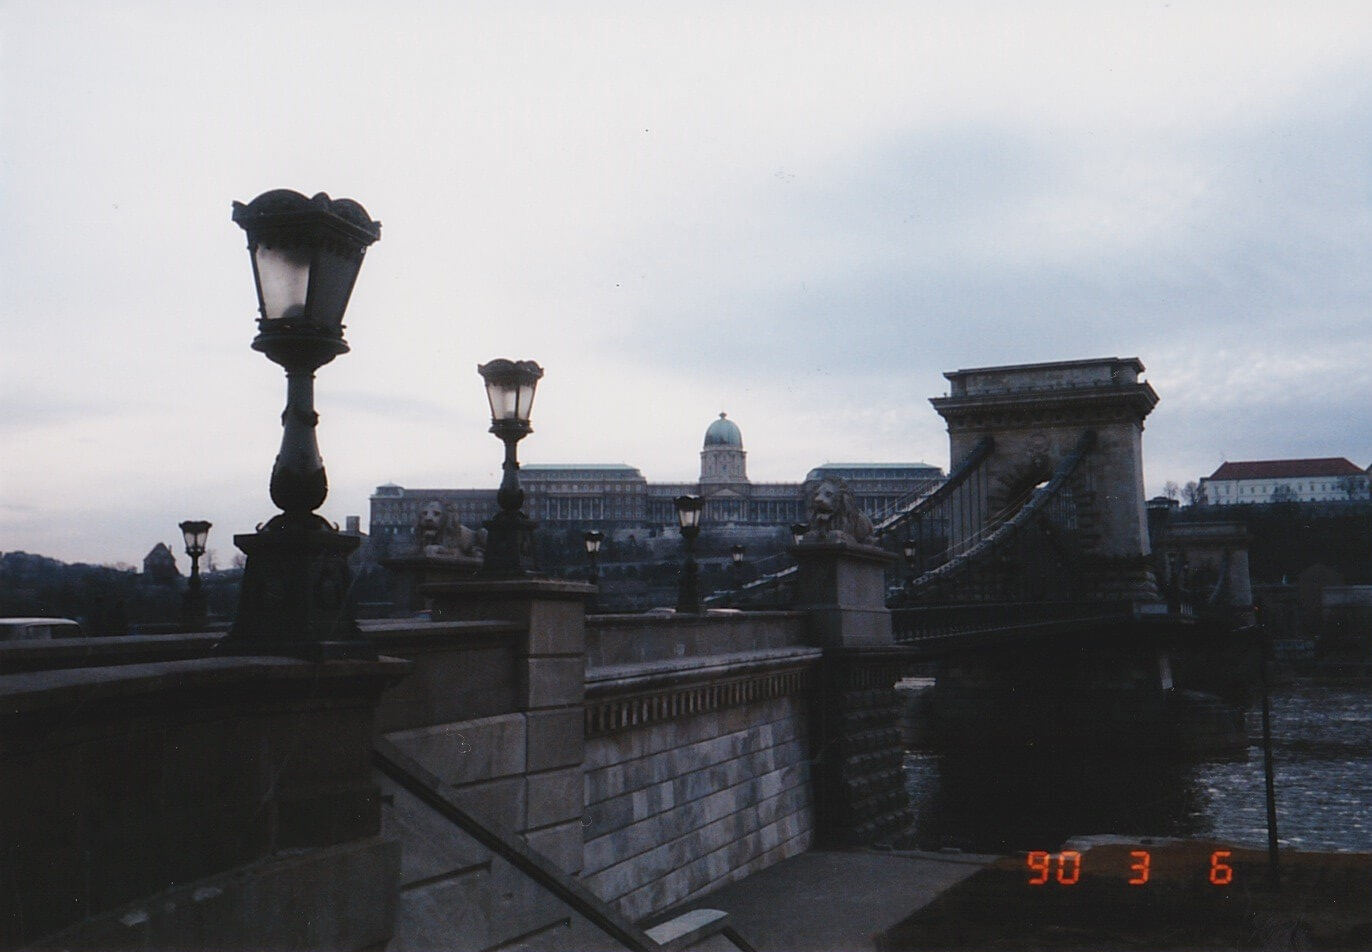 ブダペスト そしてヴェネツィアへ 1990年ヨーロッパひとり旅 Budapest And Head For Venezia Solo Travel To Europe In 1990 はじめの一歩